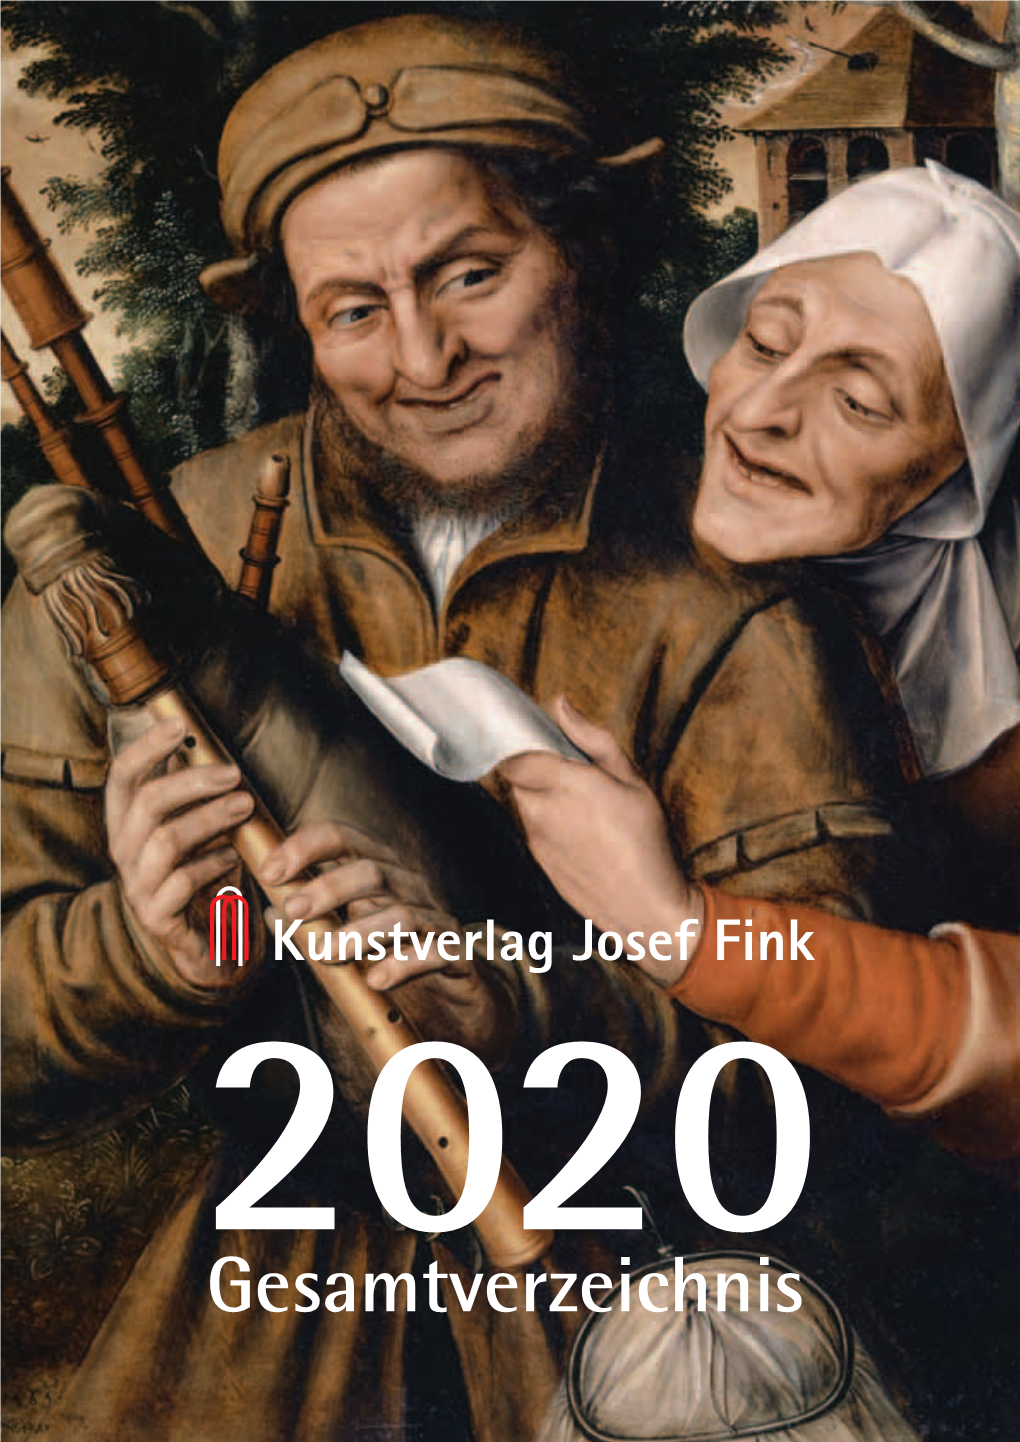 Kunstverlag Josef Fink, Gesamtverzeichnis 2020